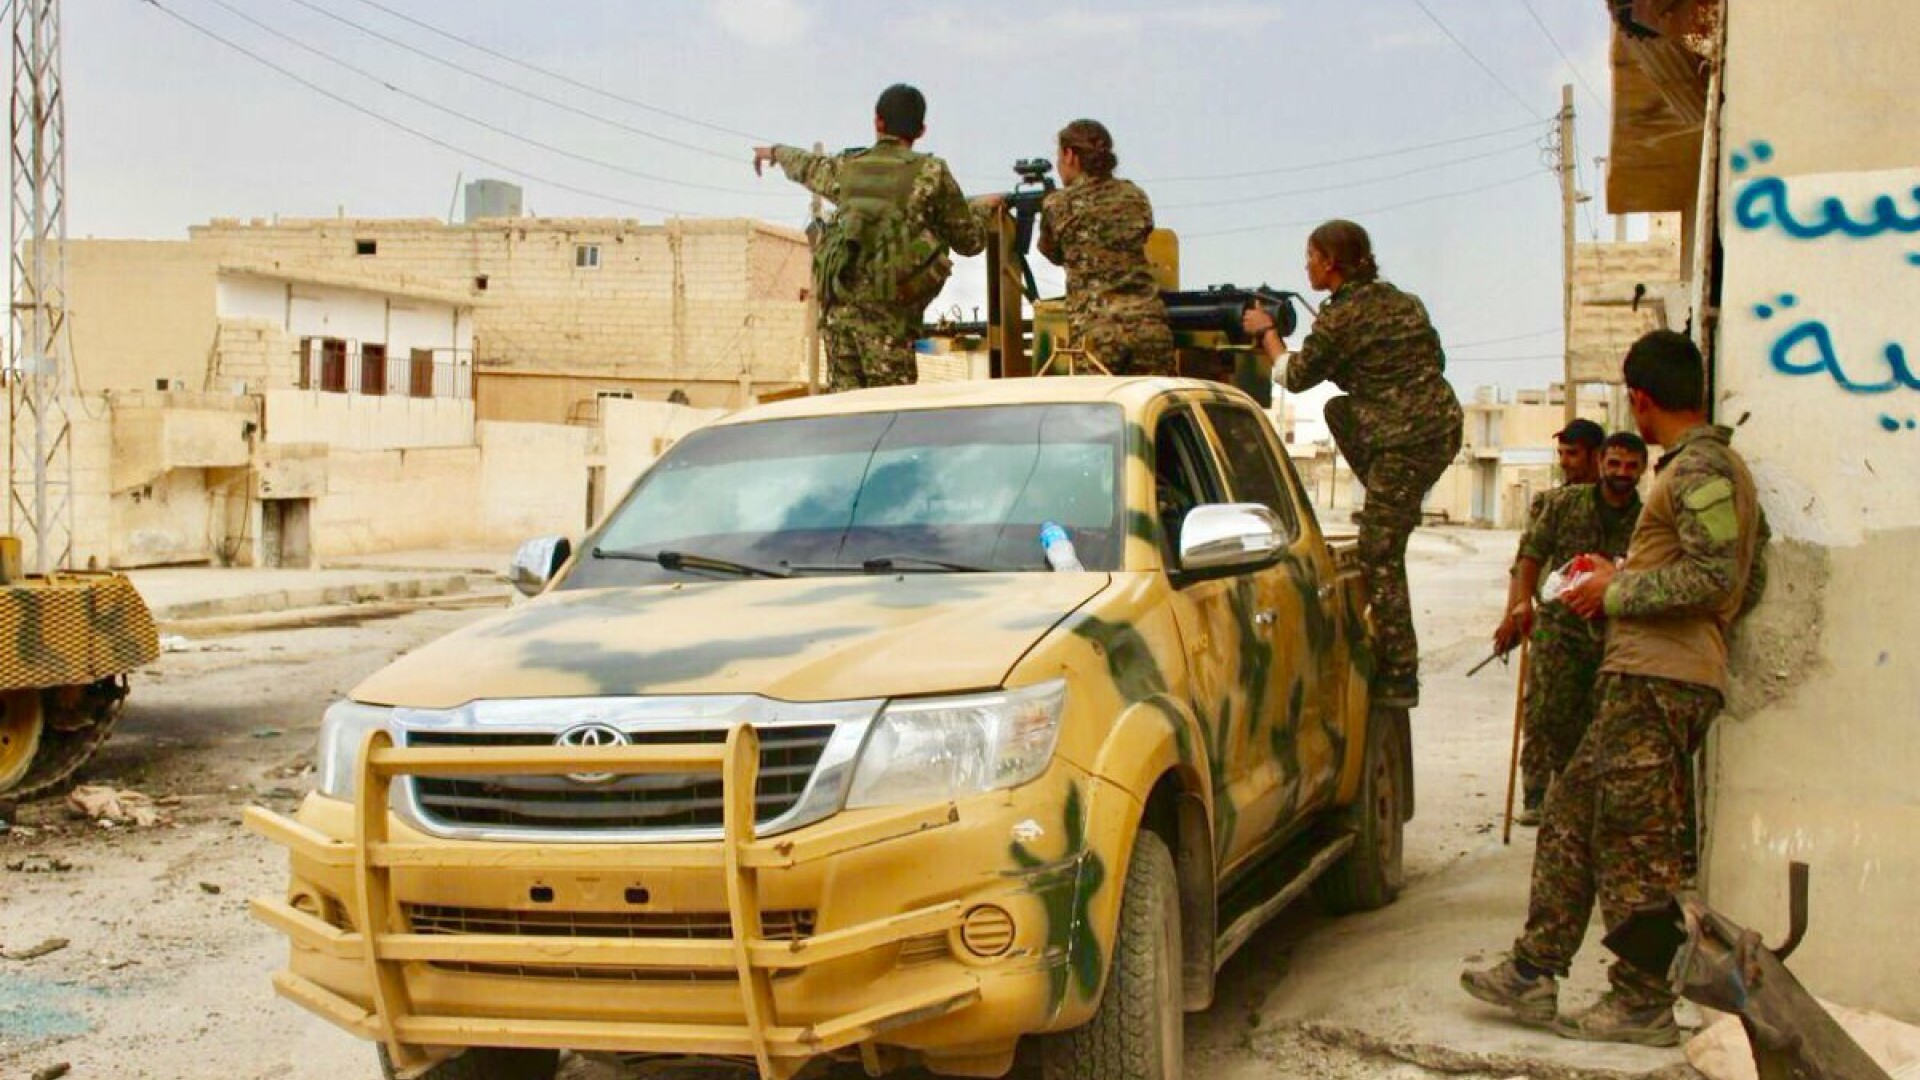 rebeli kurzi din SDF